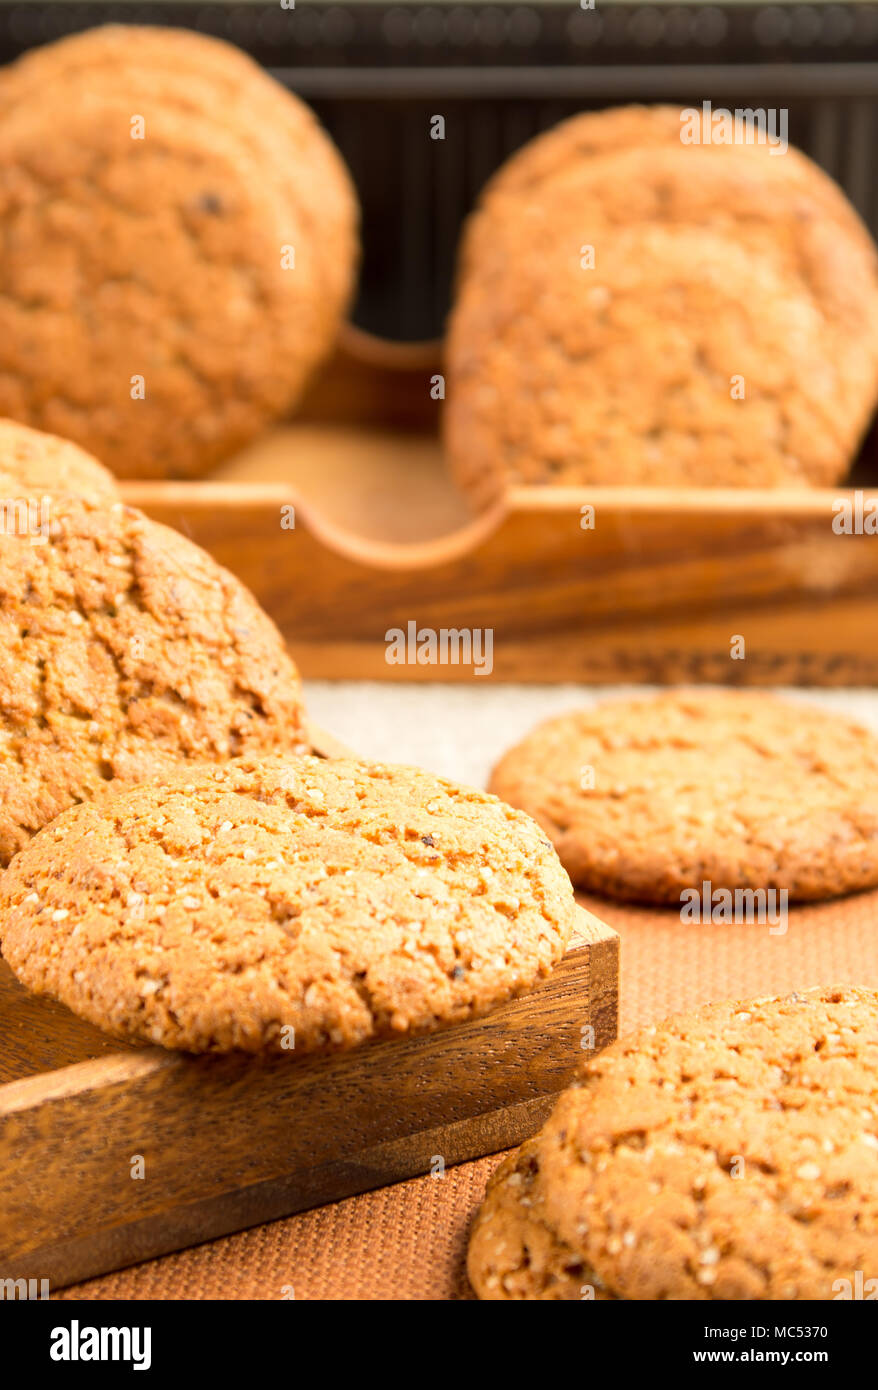 Gruppe von Haferflocken Cookies auf einer hölzernen Fach auf einem braunen Tischdecke mit einer sehr geringen Schärfentiefe Stockfoto